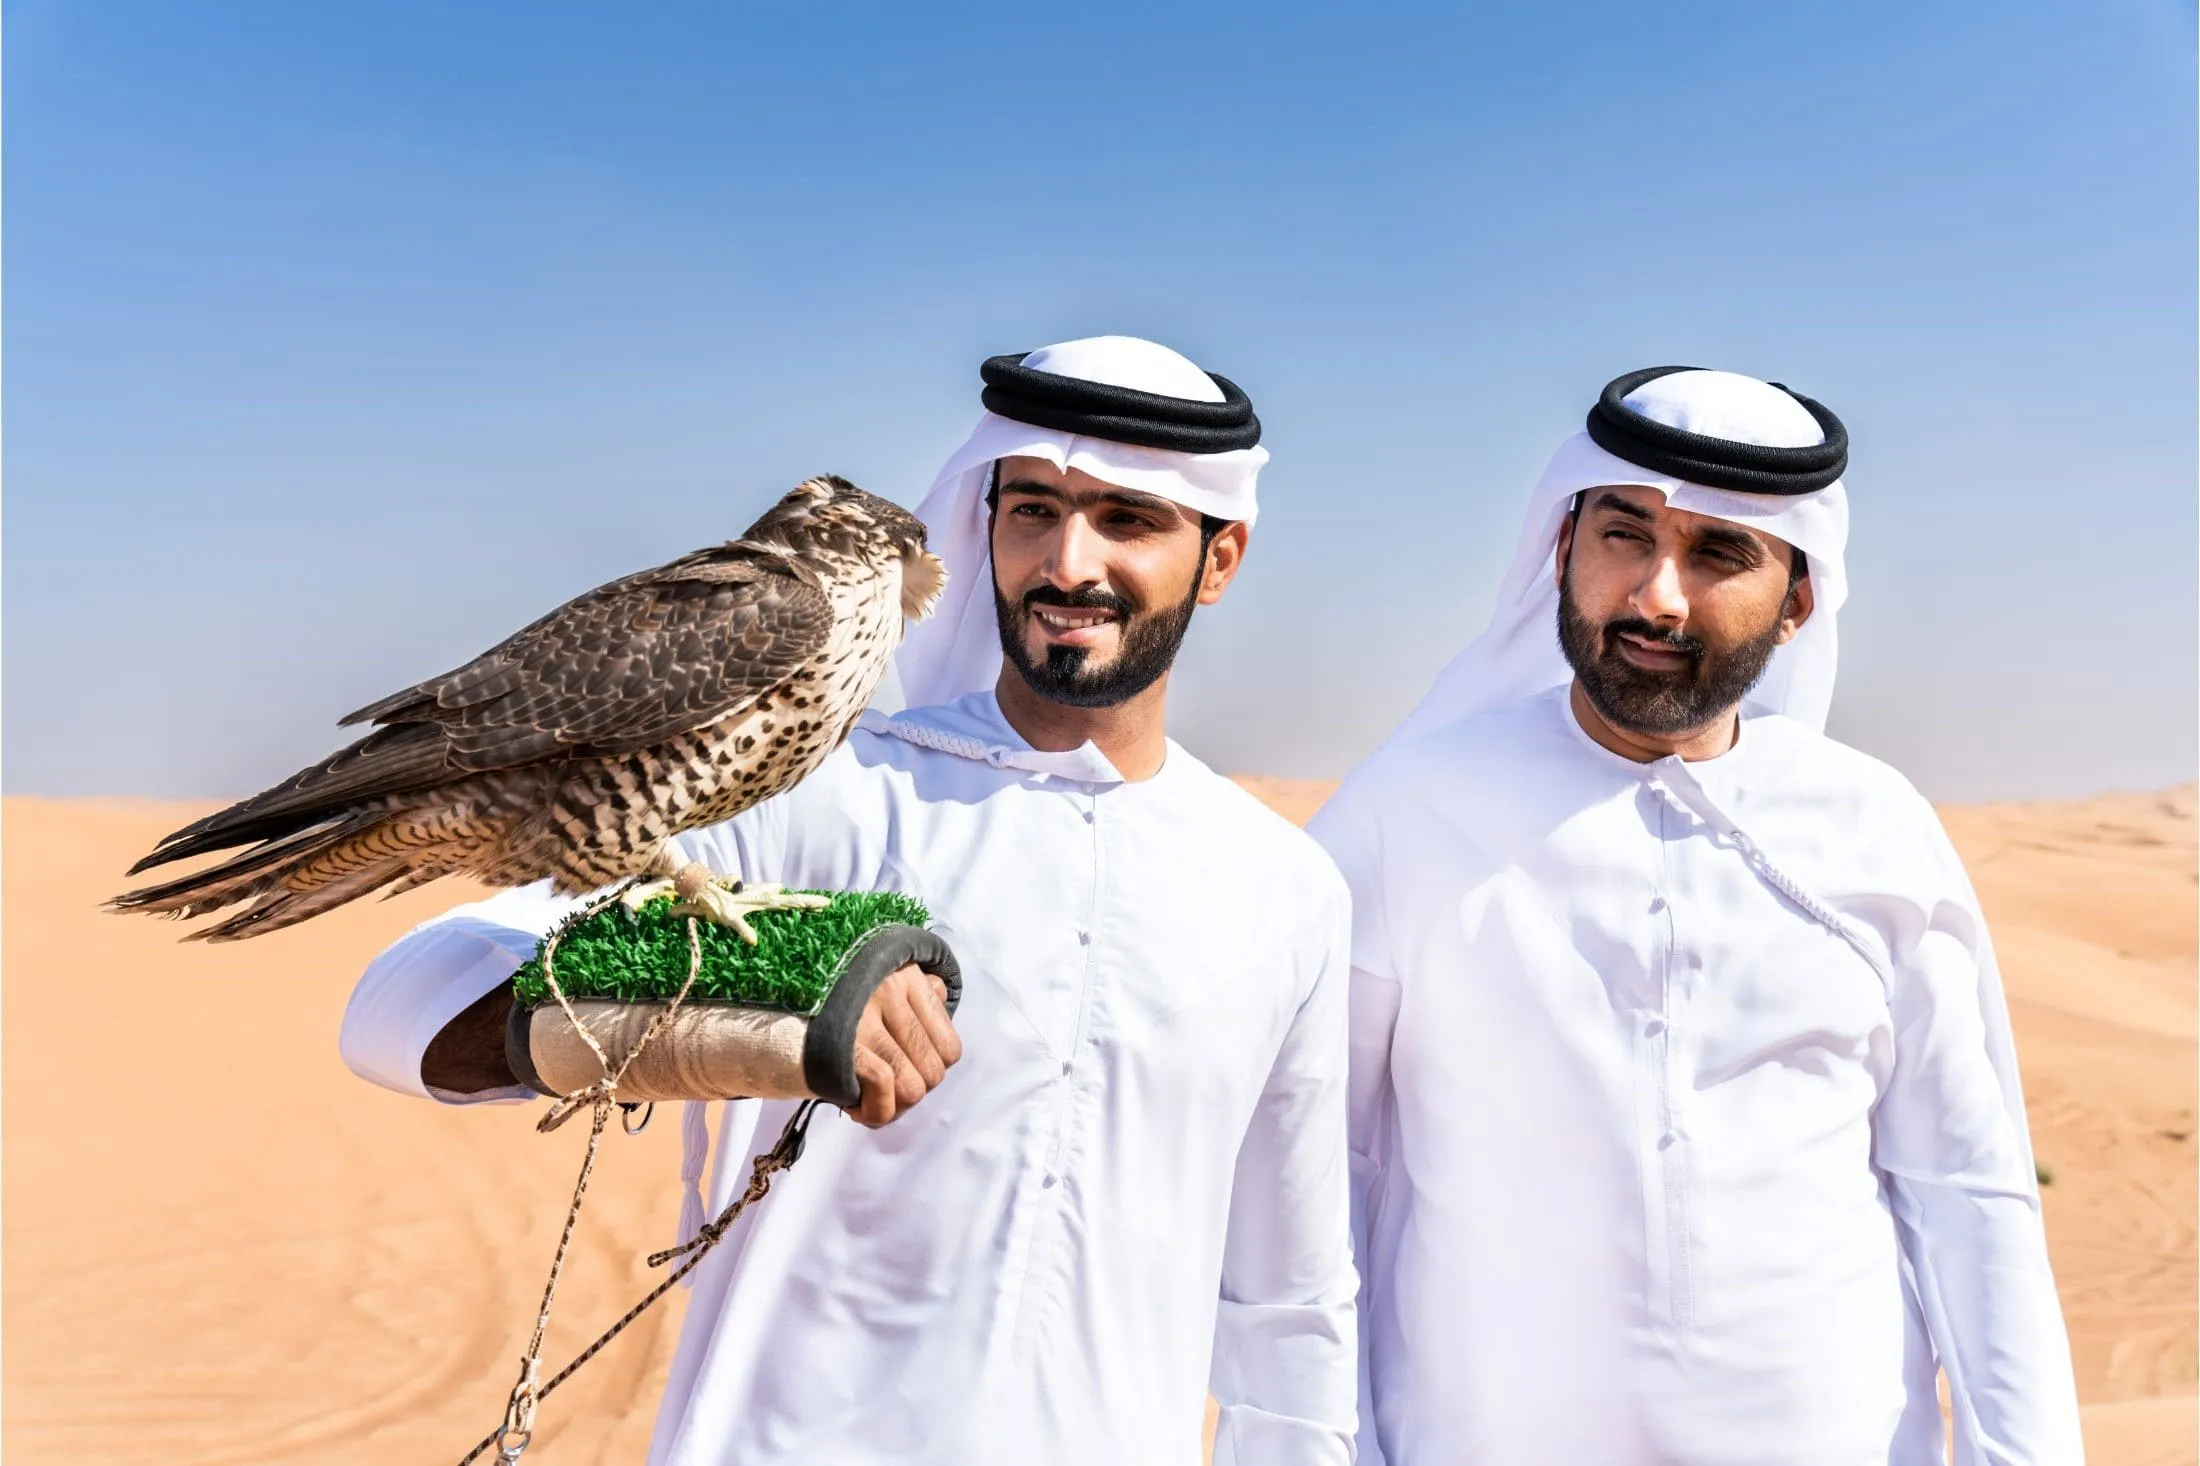 Pet falcon in UAE